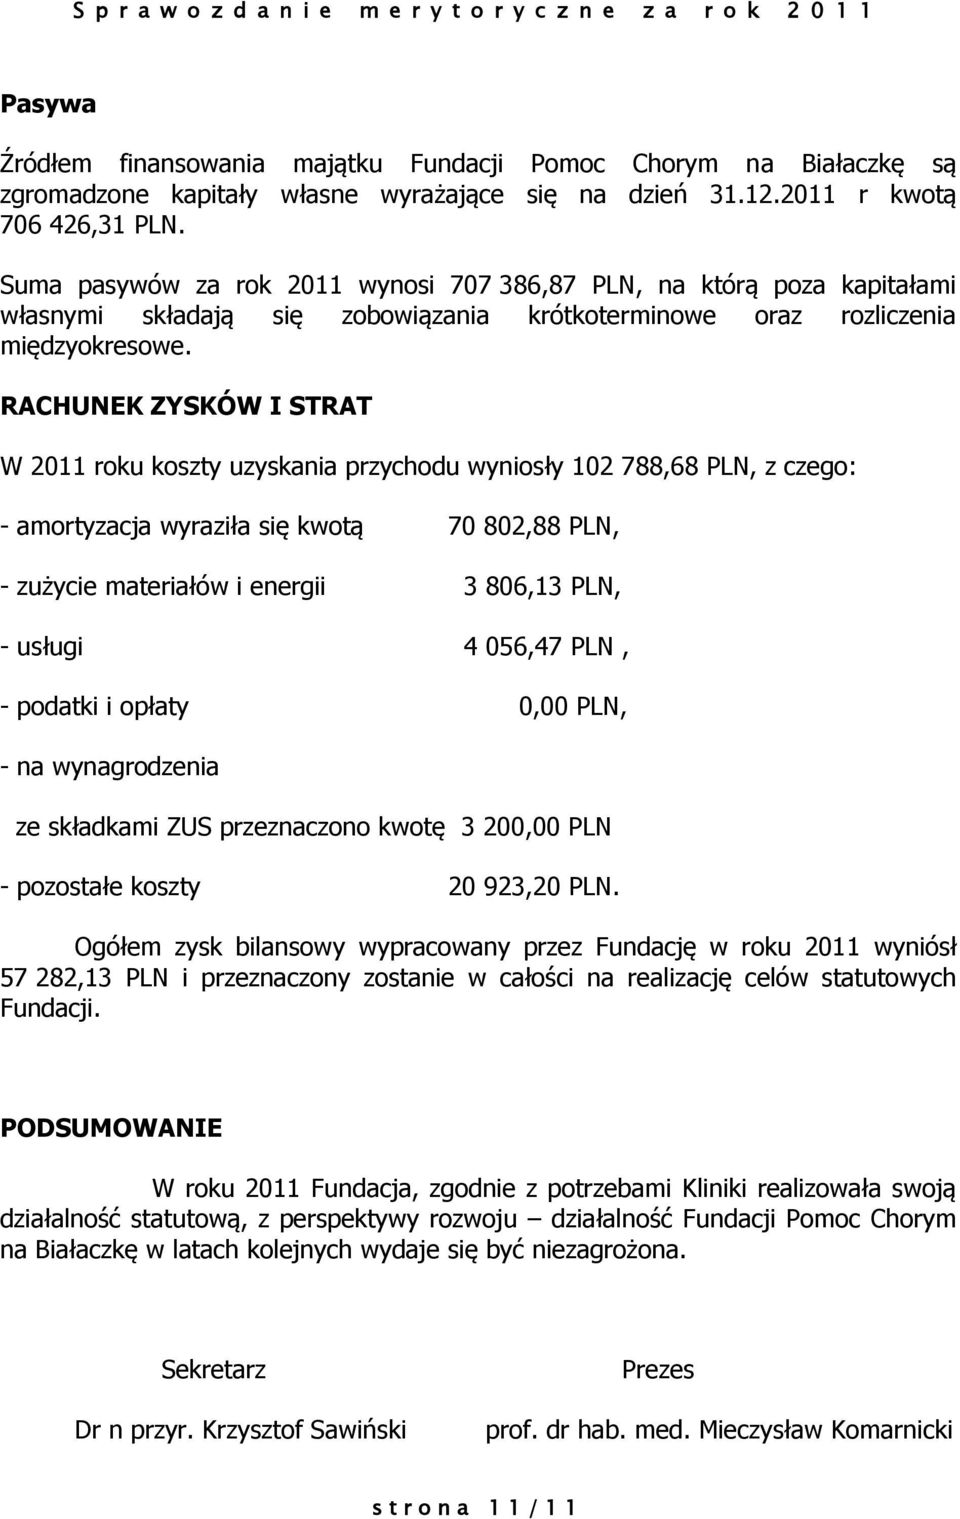 RACHUNEK ZYSKÓW I STRAT W 2011 roku koszty uzyskania przychodu wyniosły 102 788,68 PLN, z czego: - amortyzacja wyraziła się kwotą 70 802,88 PLN, - zużycie materiałów i energii 3 806,13 PLN, - usługi